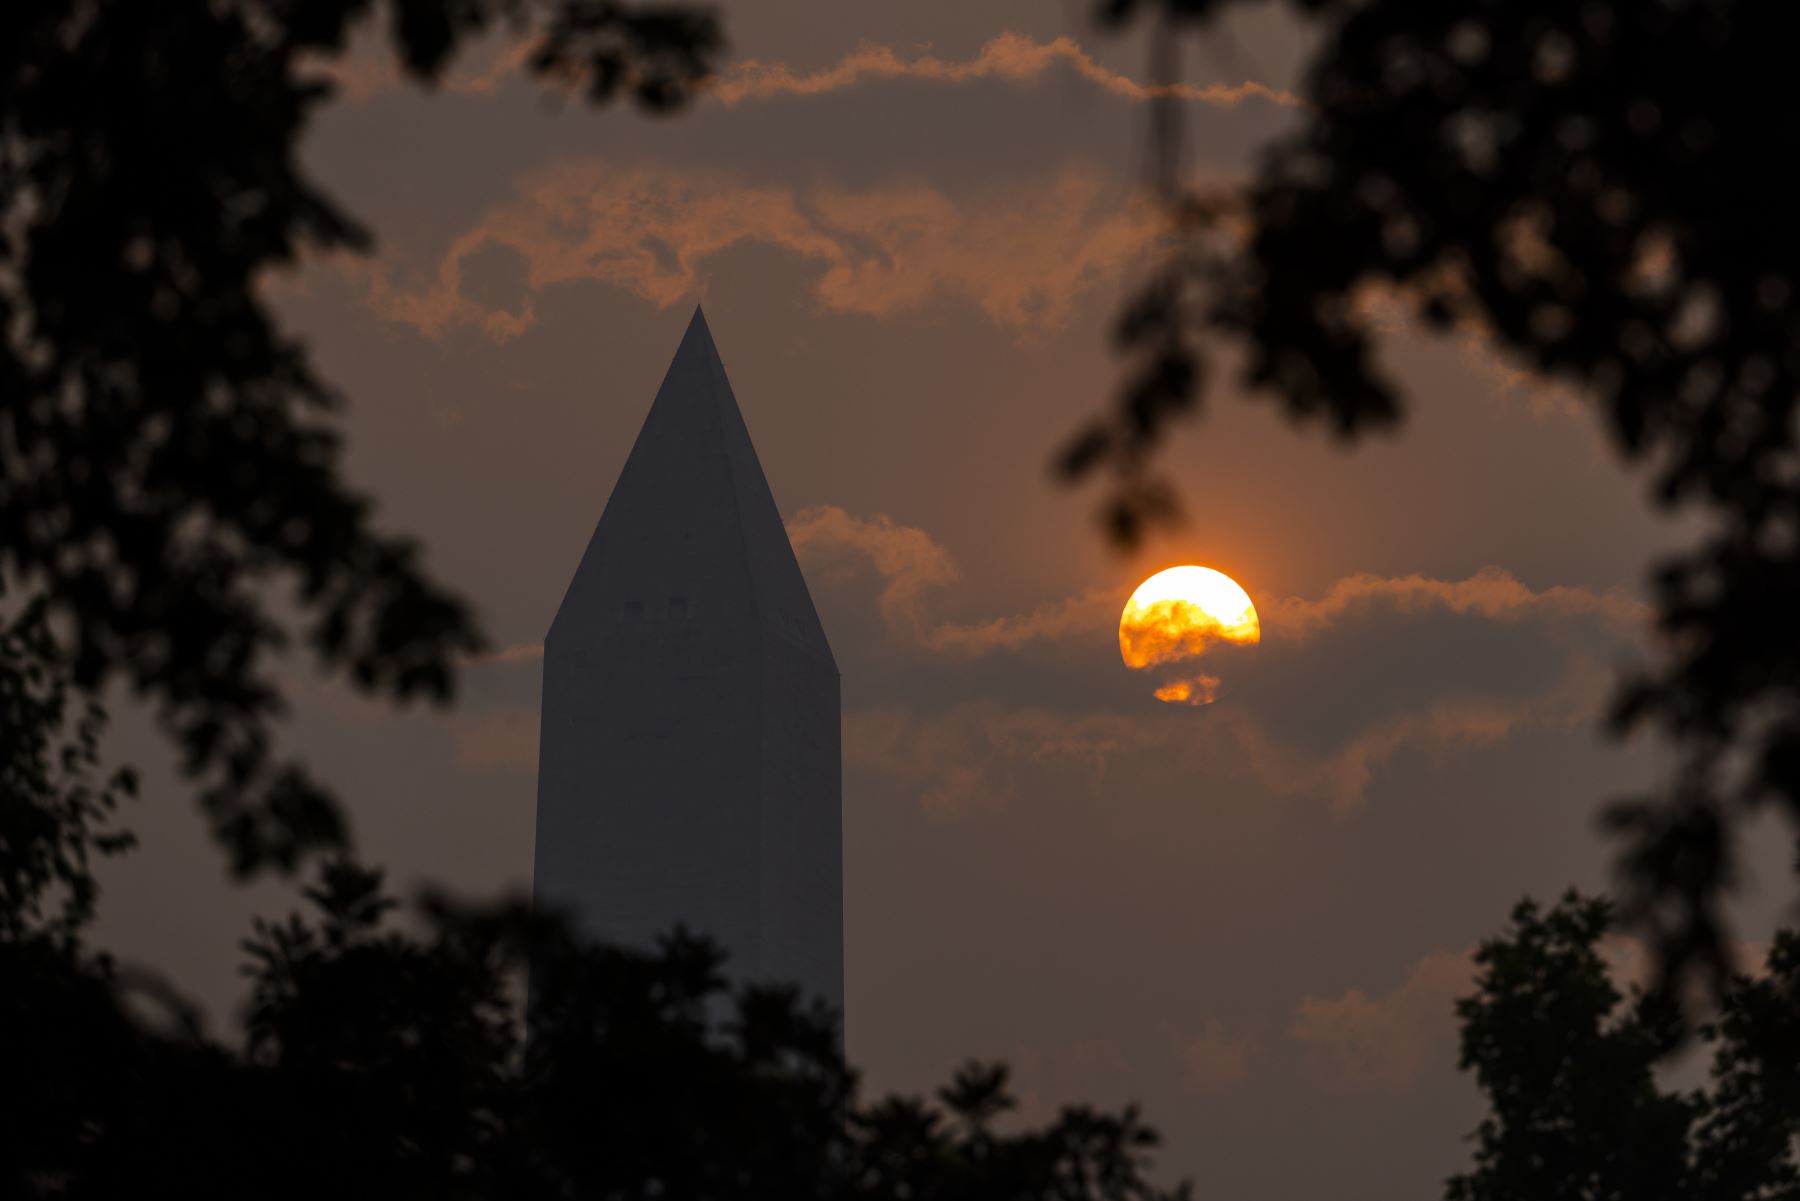 El humo de los incendios forestales canadienses arroja una neblina frente al Monumento a Washington al amanecer en Washington, DC que emitió una alerta de calidad del aire de código rojo como resultado del humo, que está afectando a gran parte del noreste de los Estados Unidos.
Foto: EFE